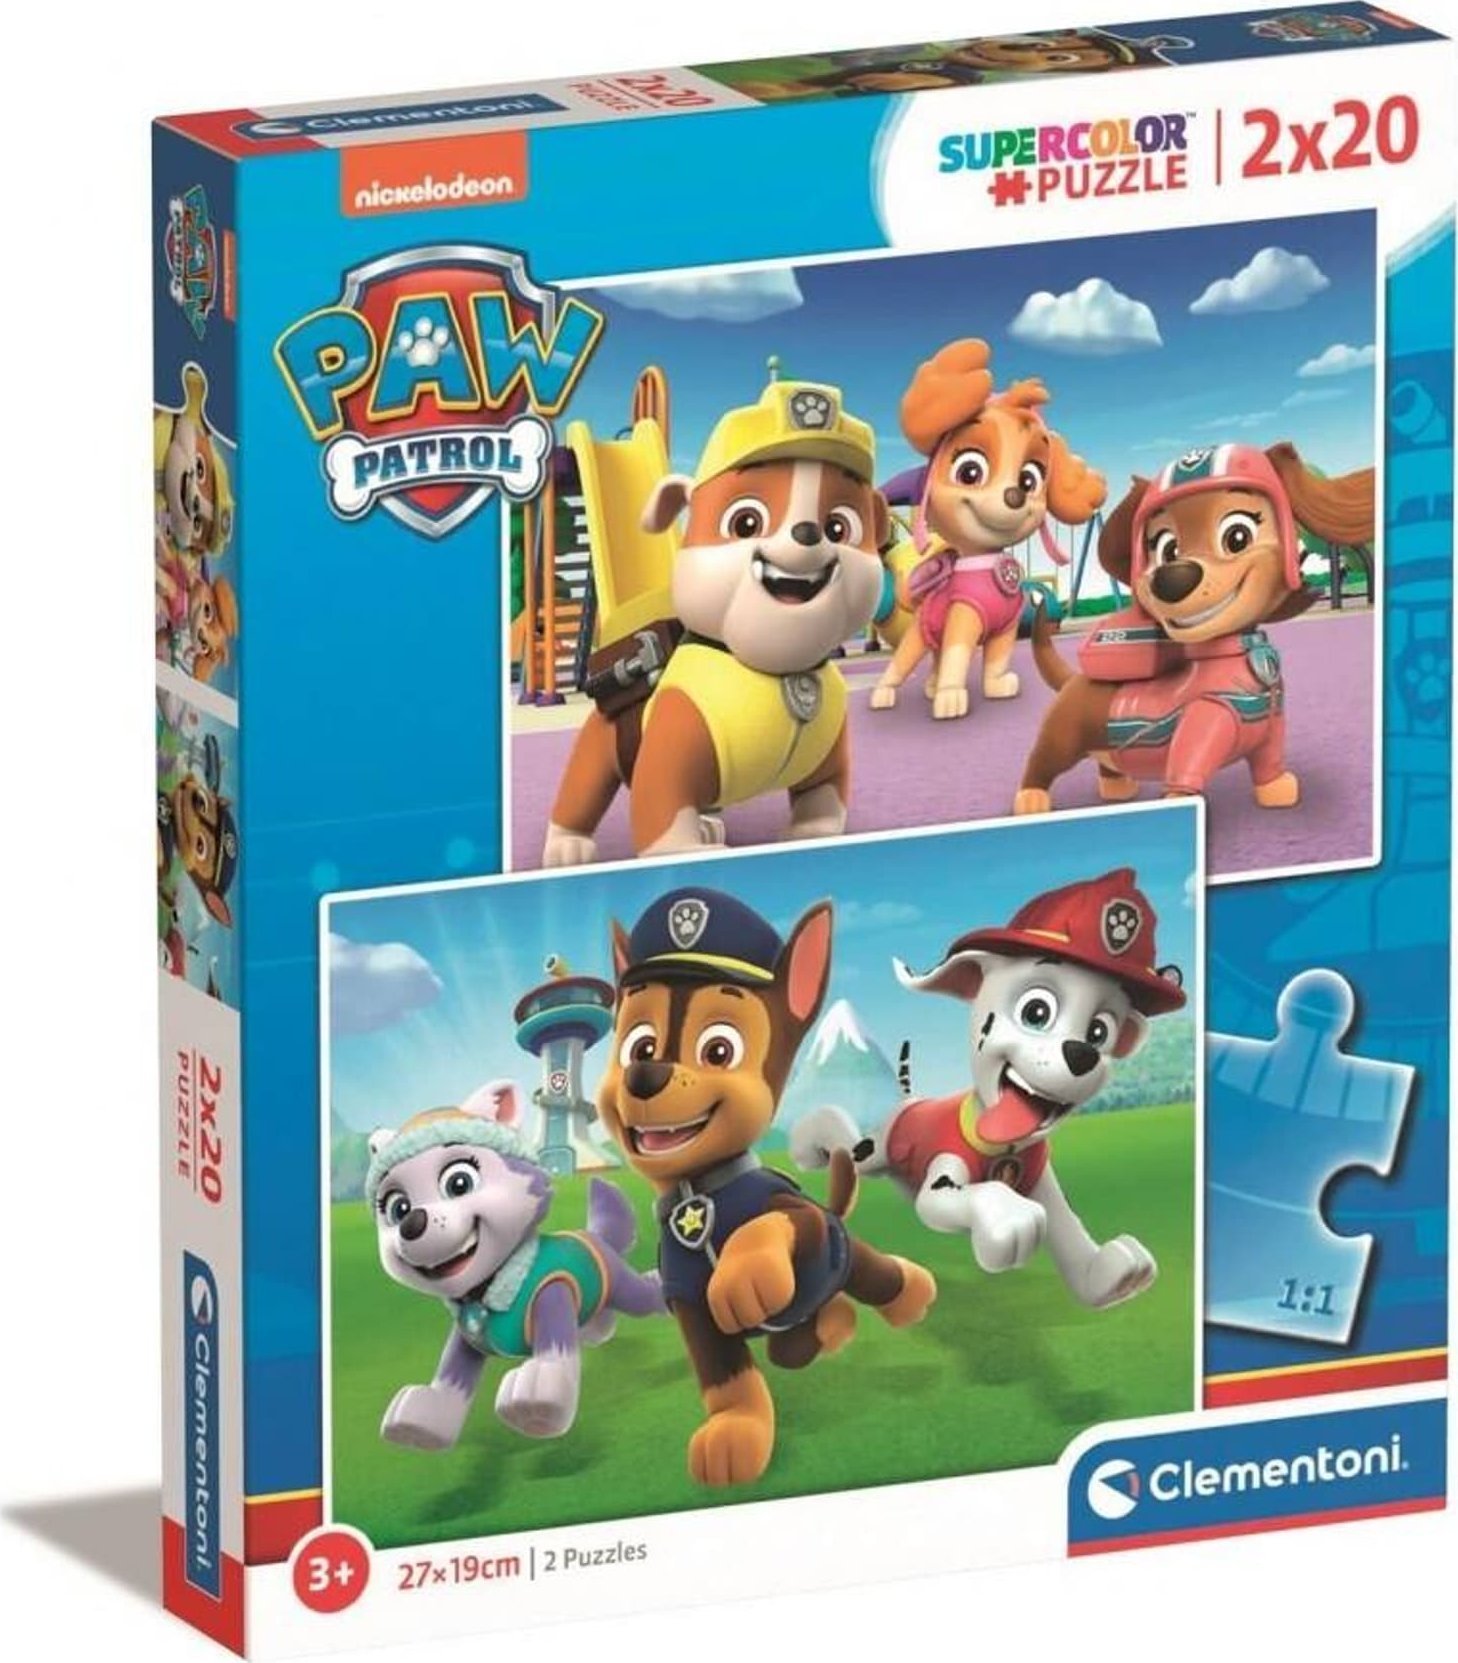 Clementoni CLE puzzle 2x20 SuperColor Paw Patrol 24800